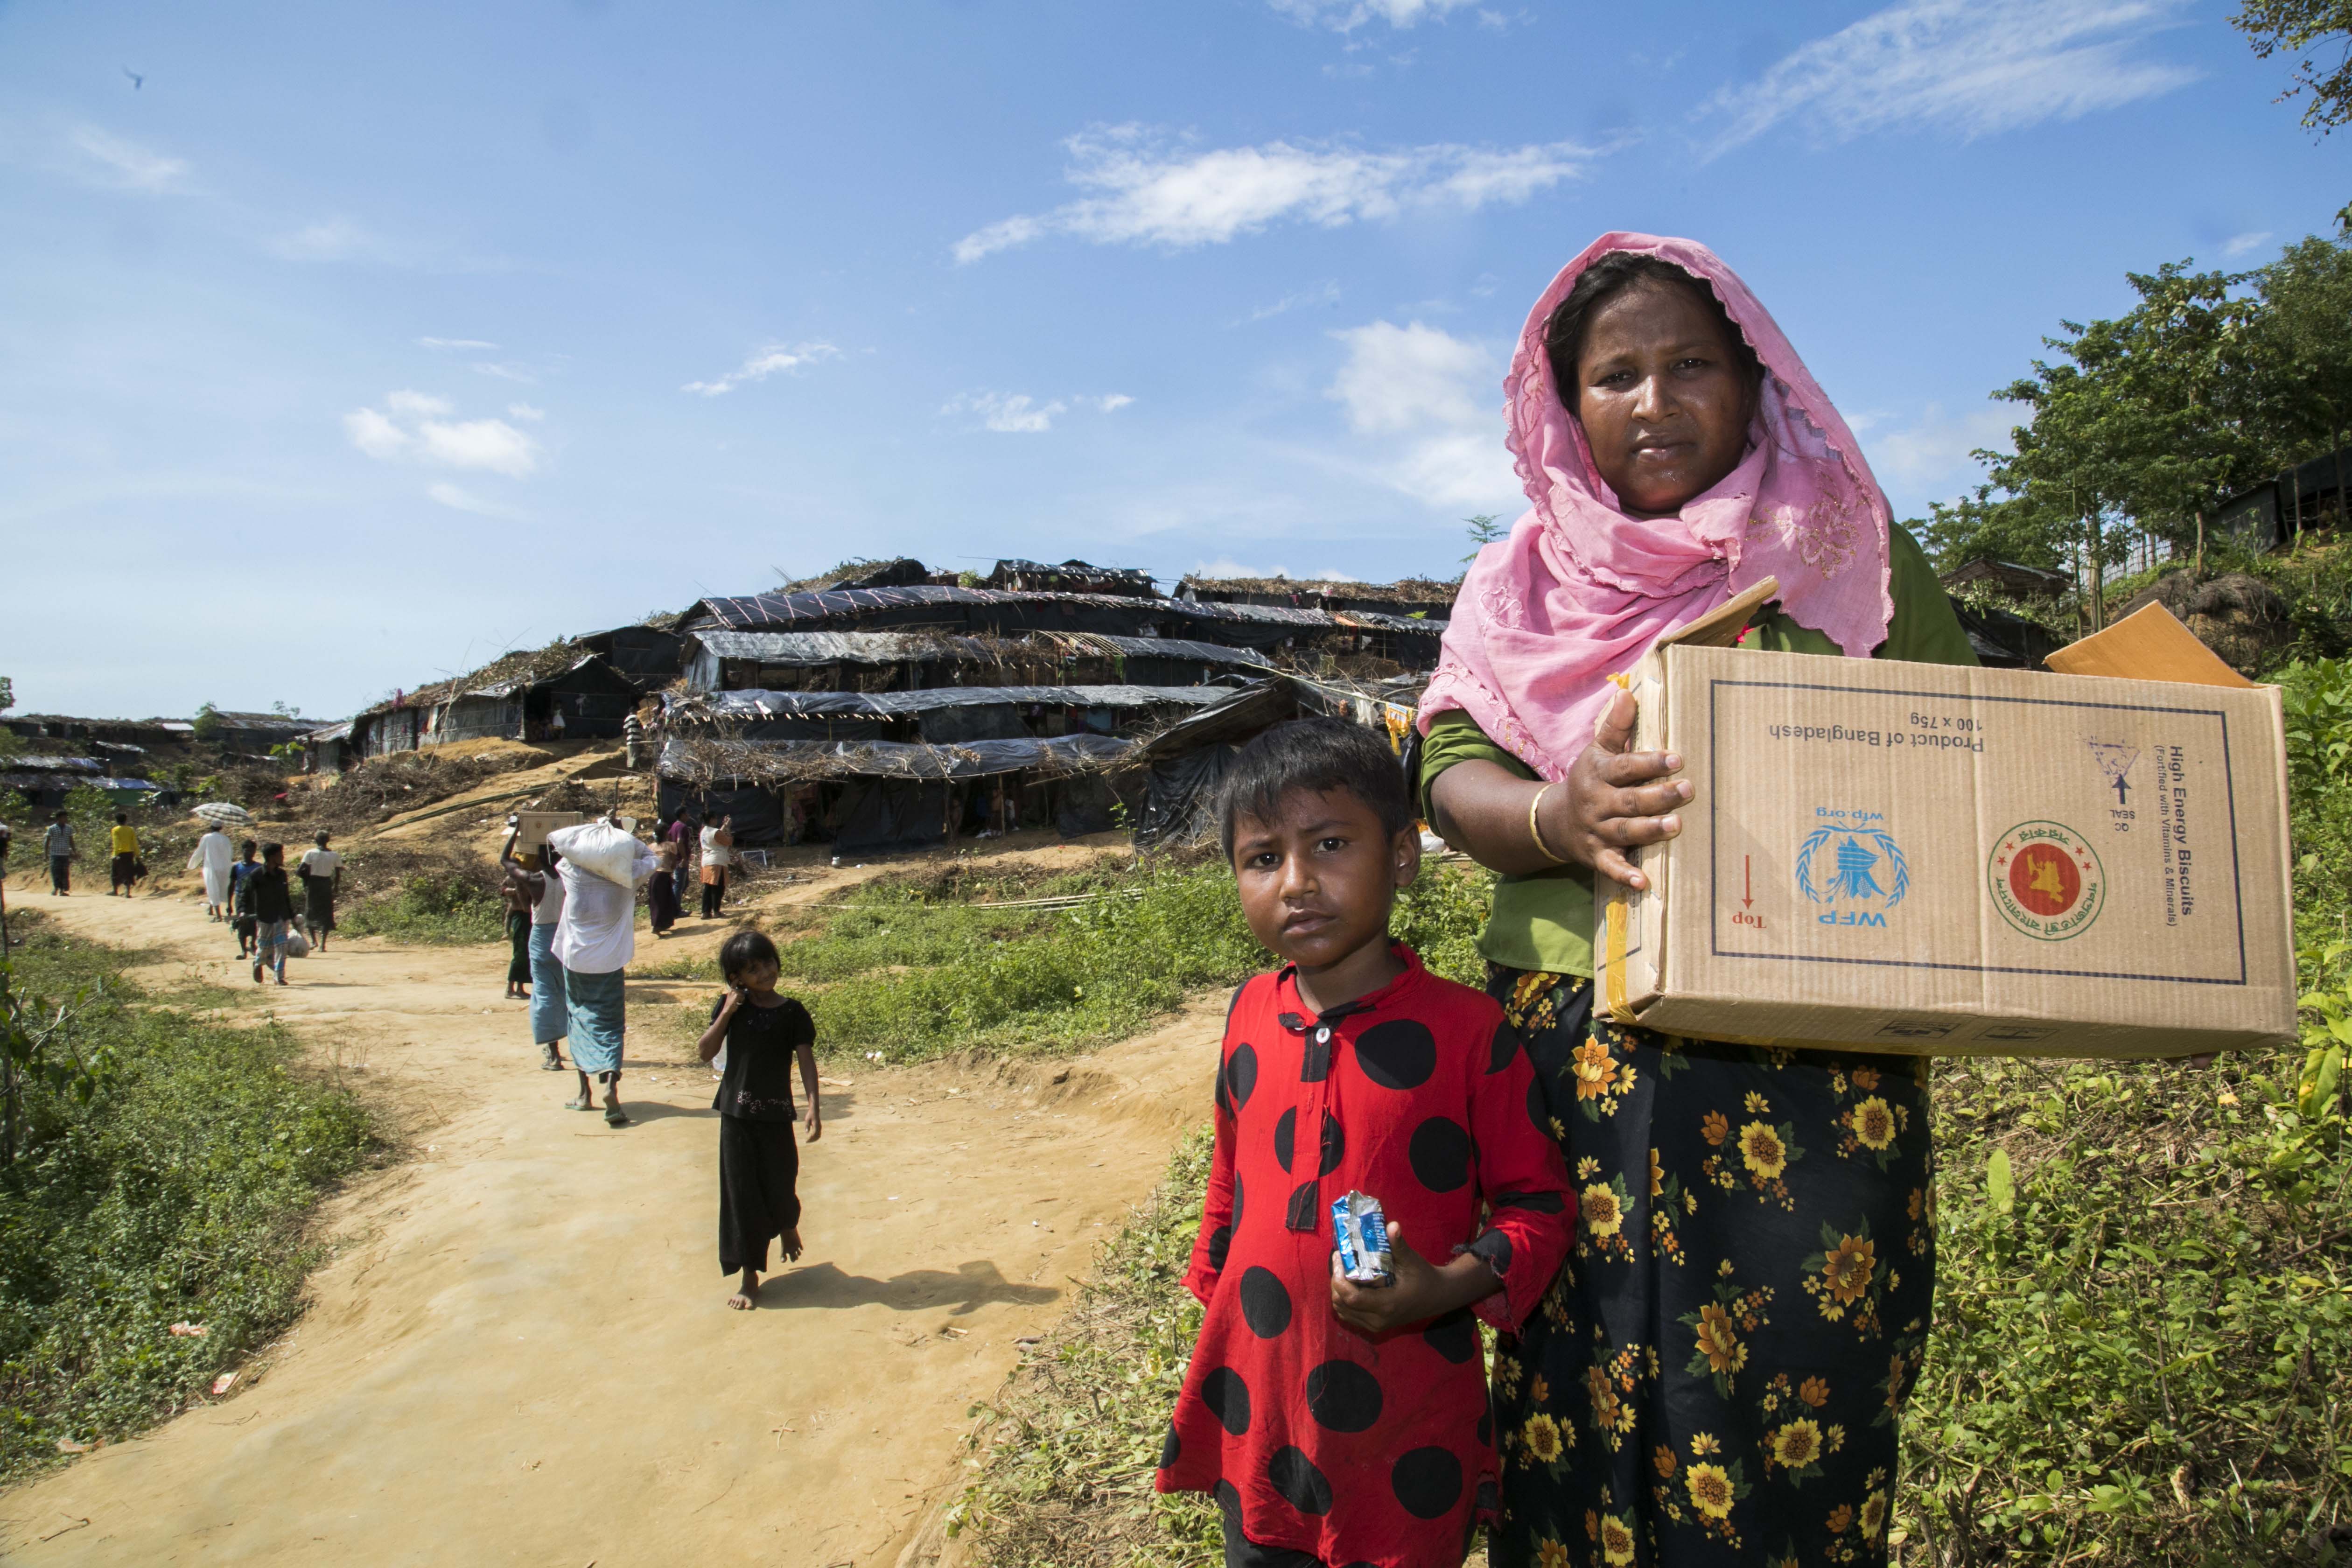 WFP Aggiornamento Operativo: Cibo del WFP fornito alla maggior parte dei nuovi arrivi a Cox's Bazar